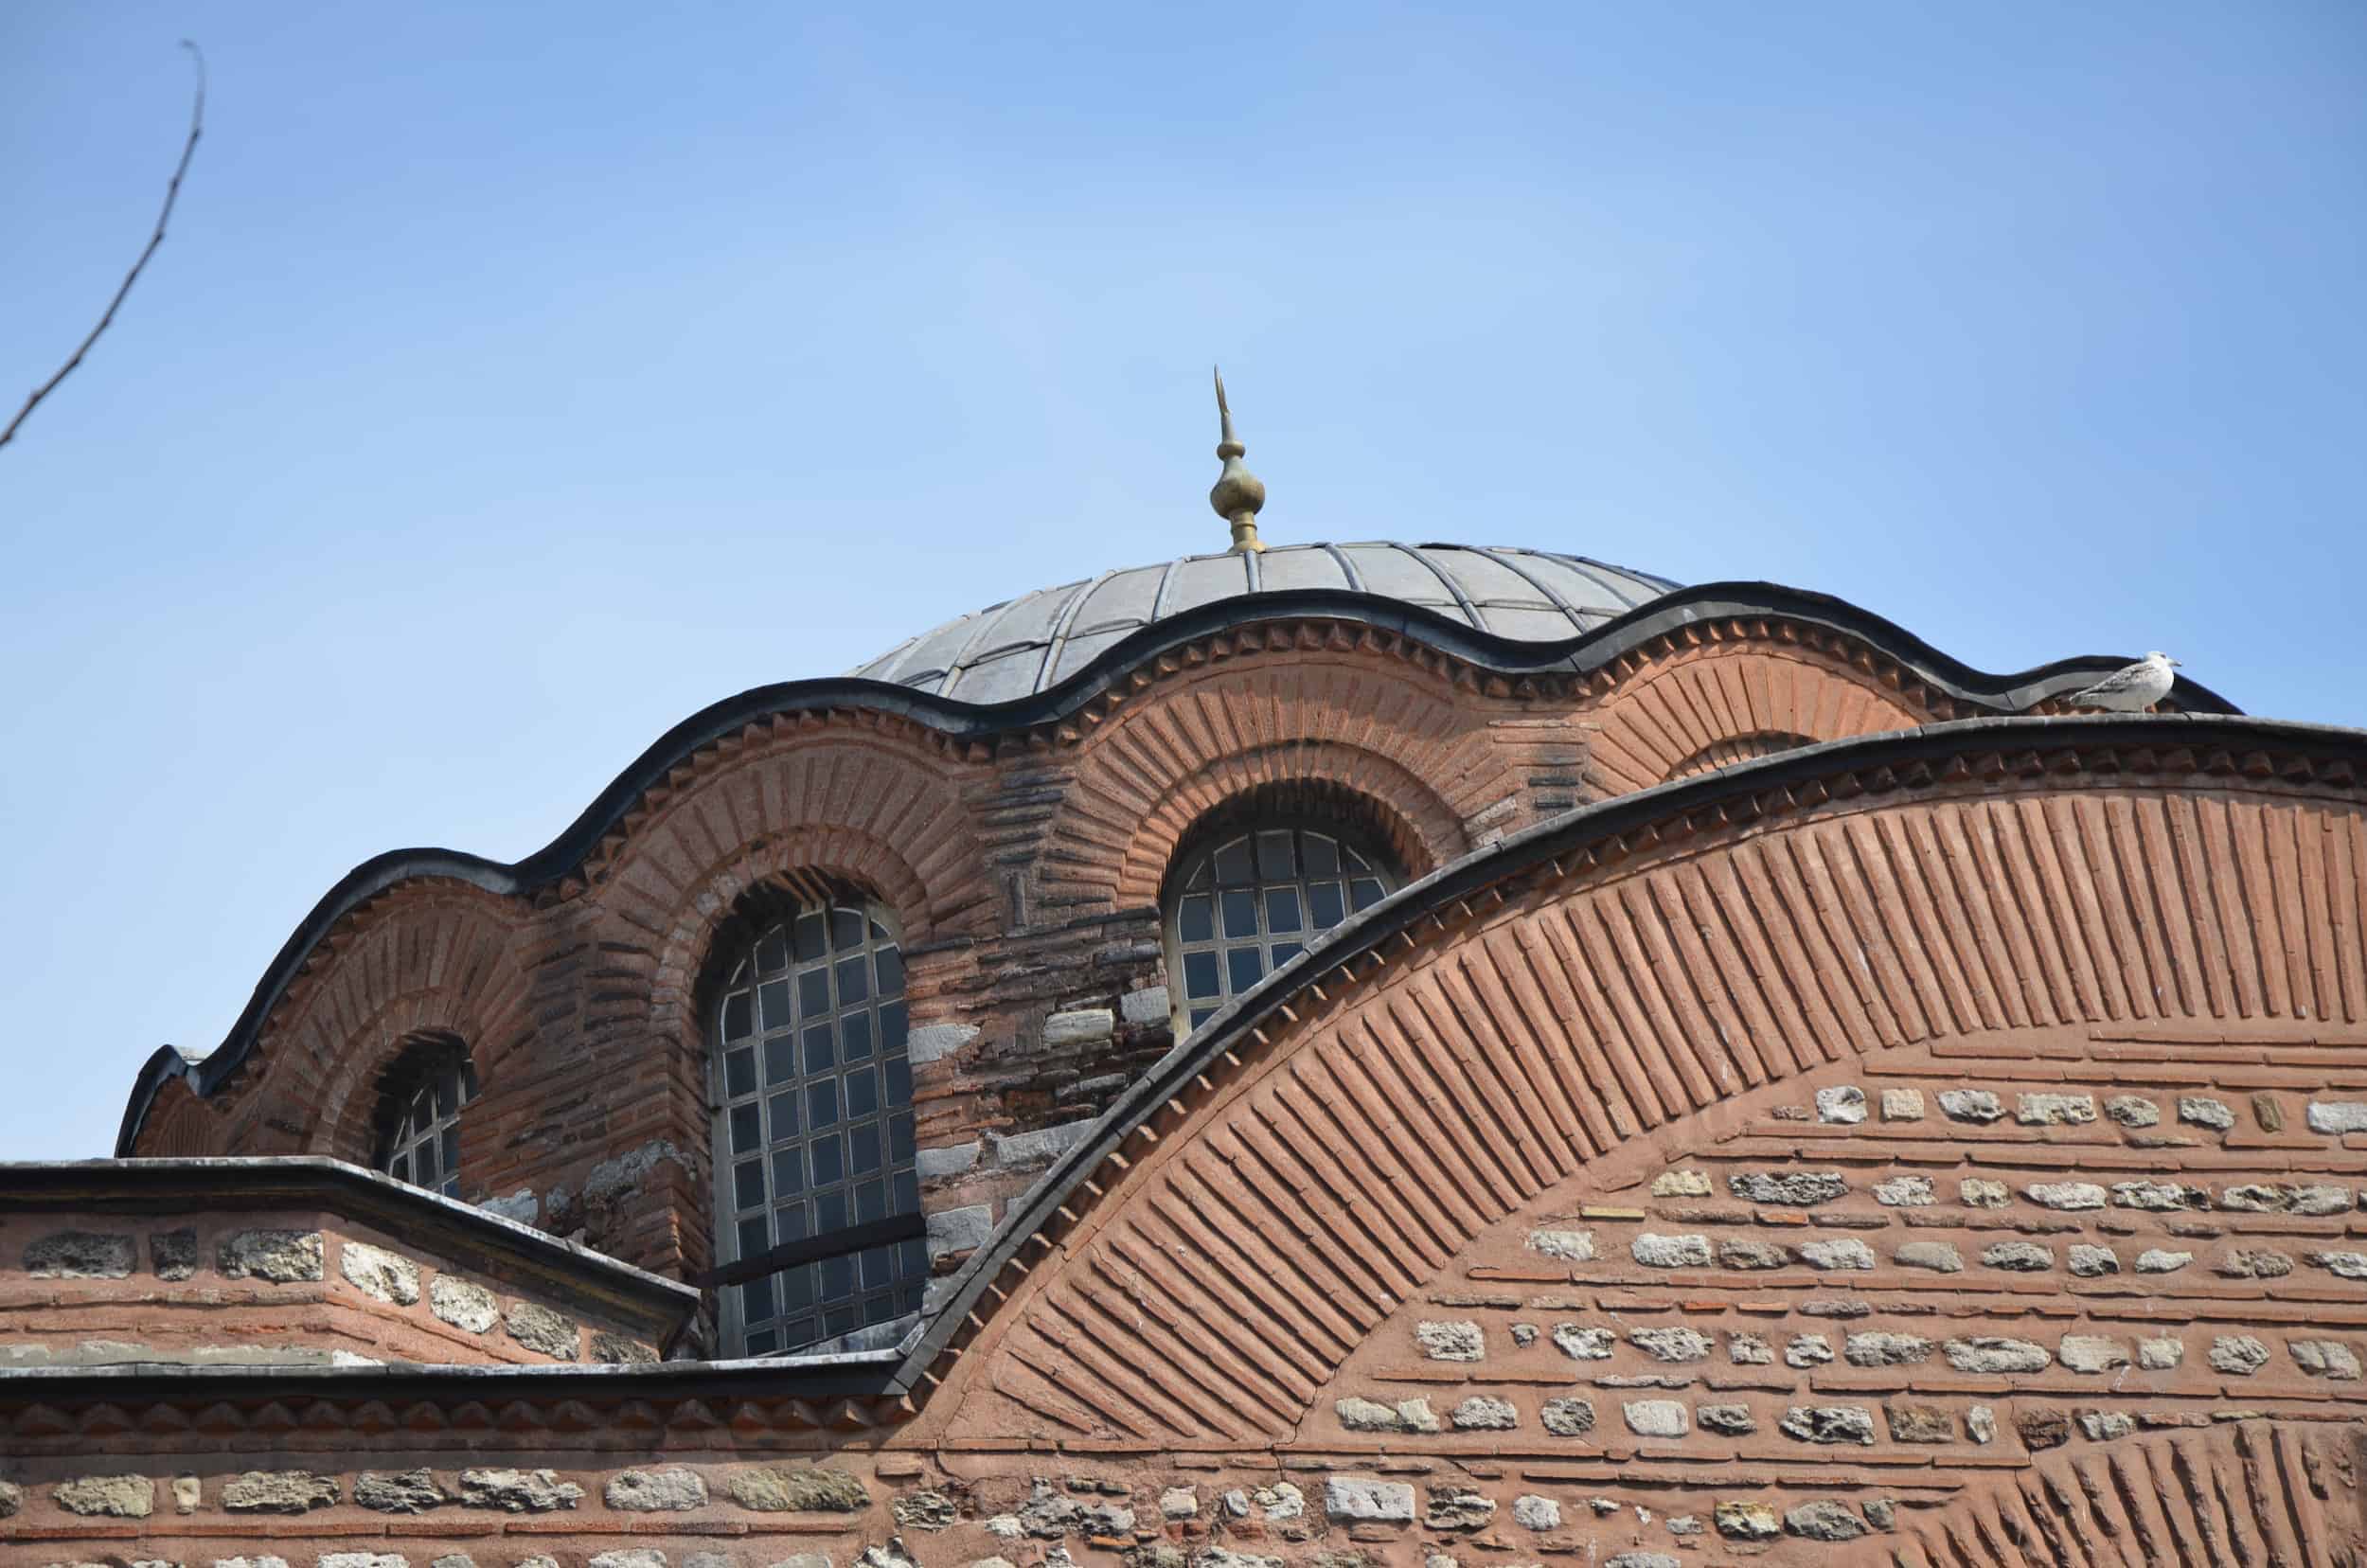 Kalenderhane Mosque in Şehzadebaşı, Istanbul, Turkey